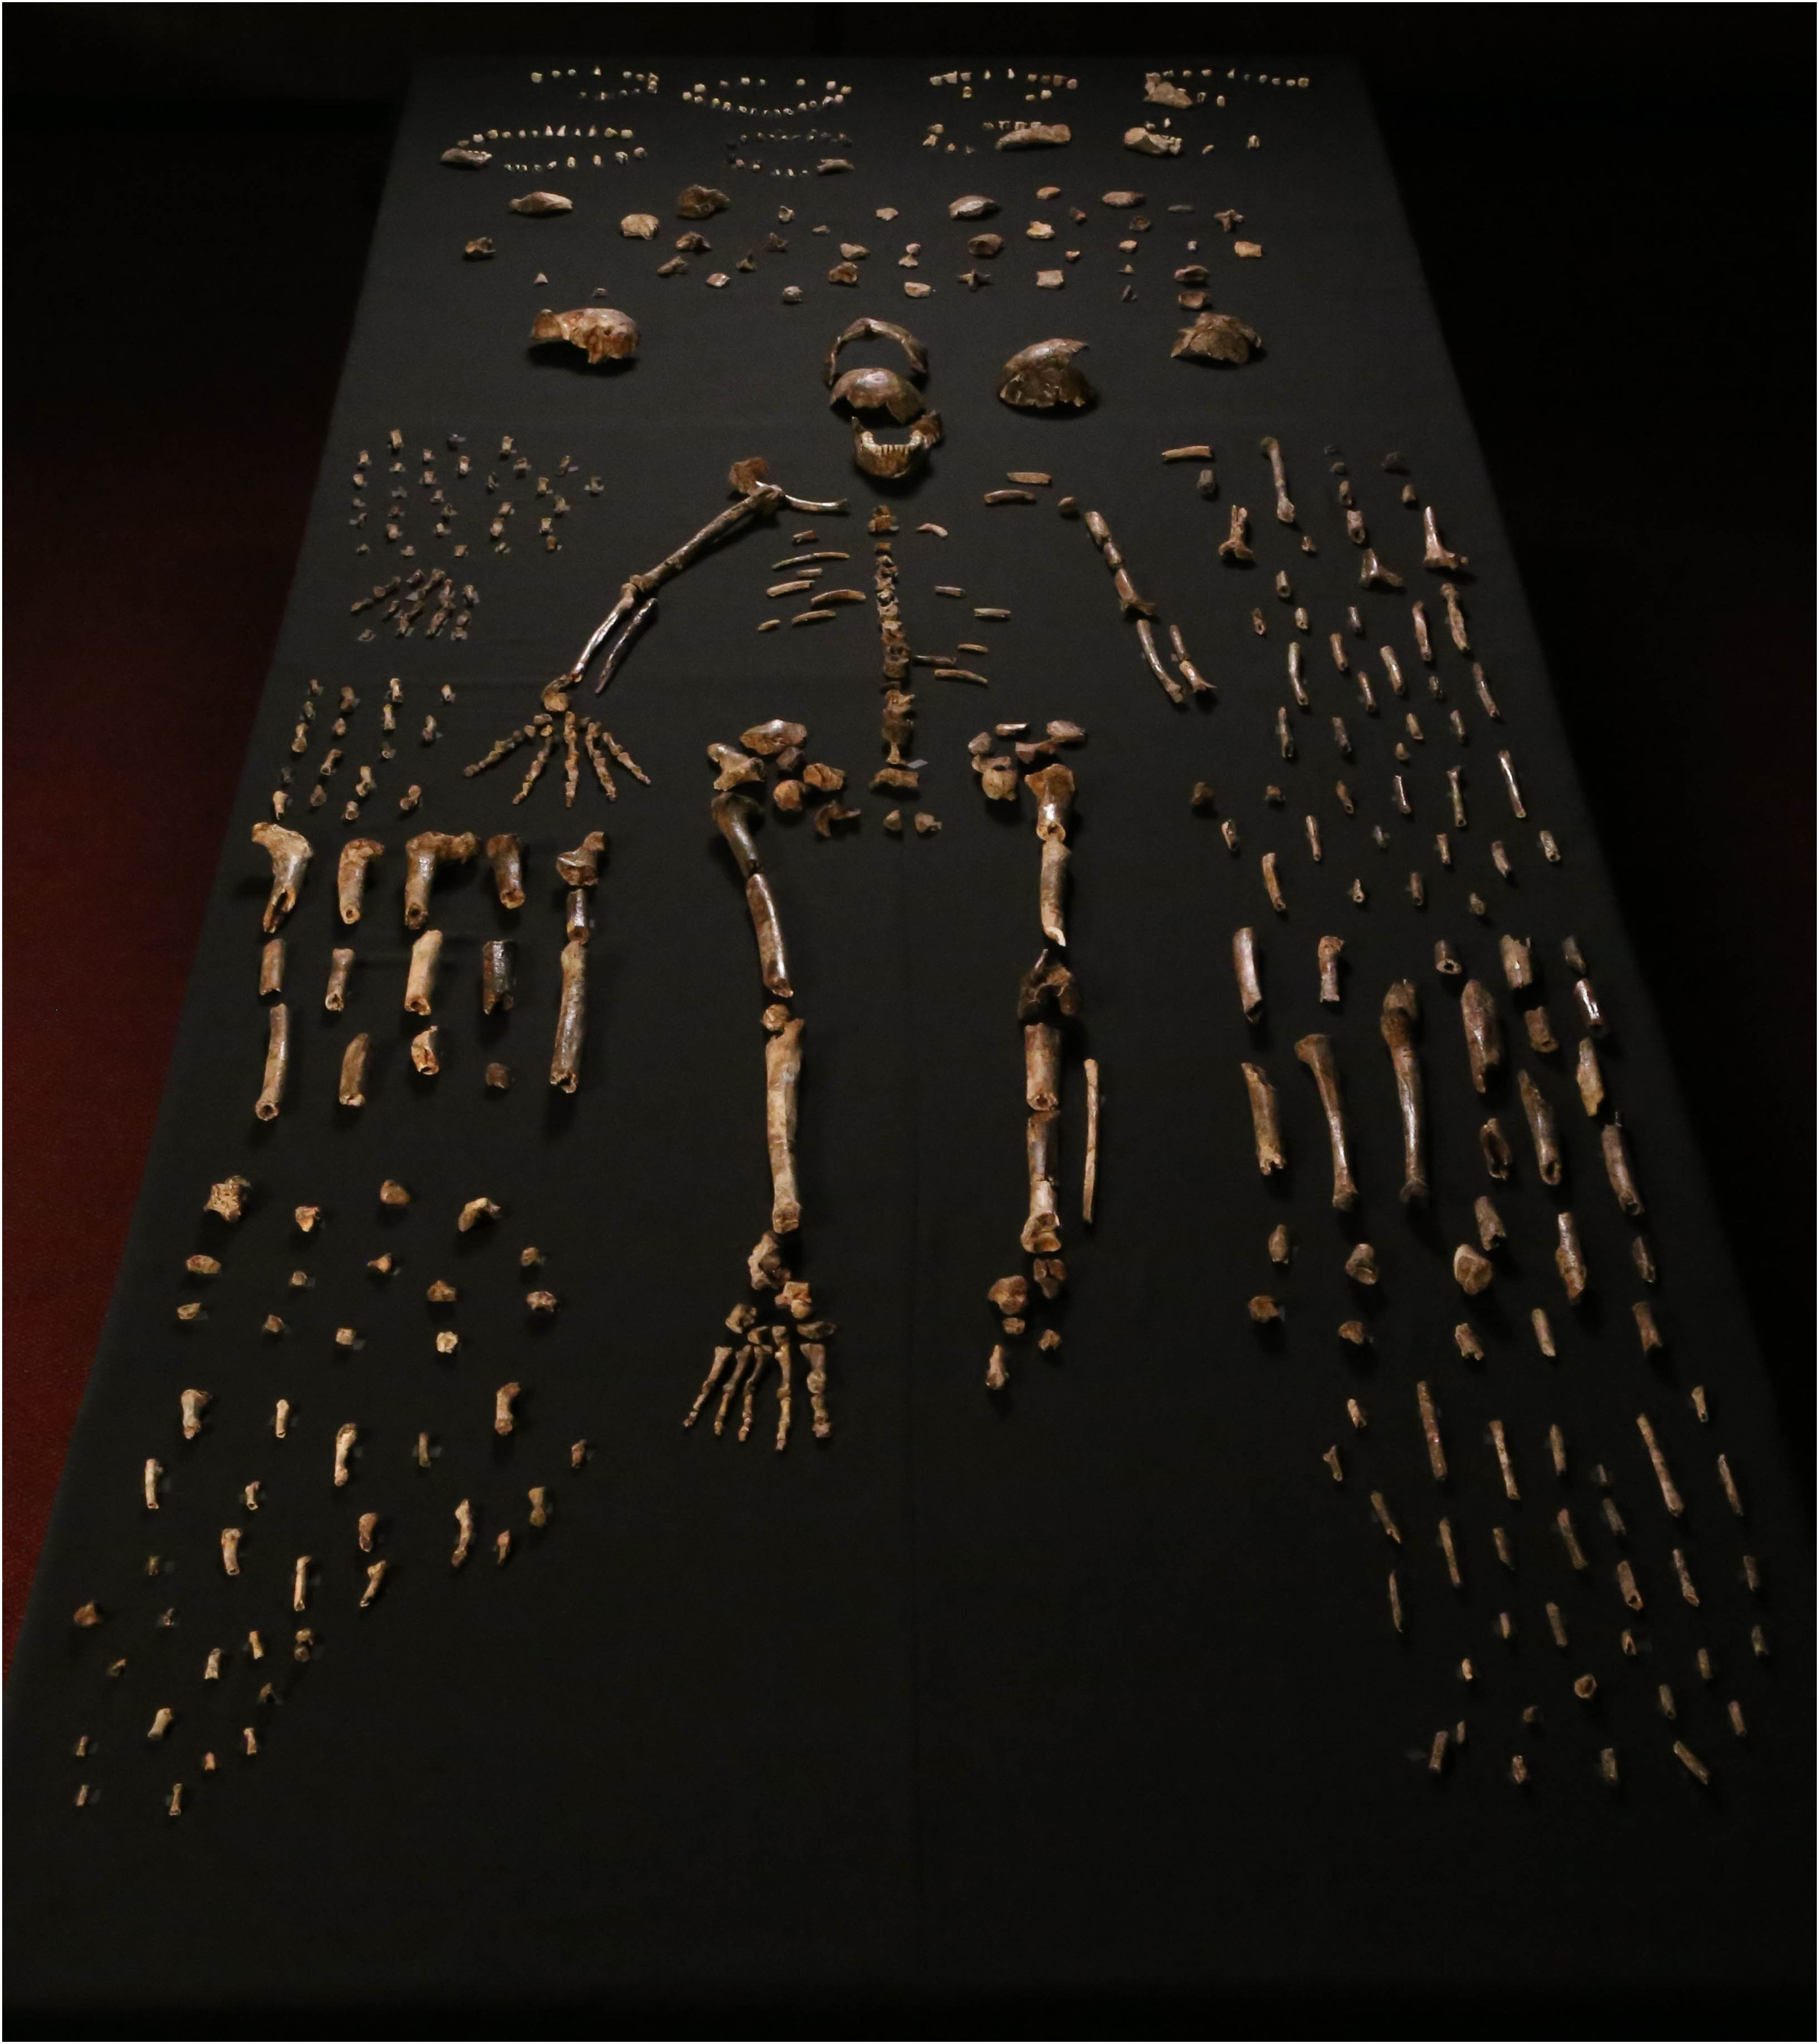 Esqueleto completo do H. naledi e muitos outros ossos (Foto: Reprodução)